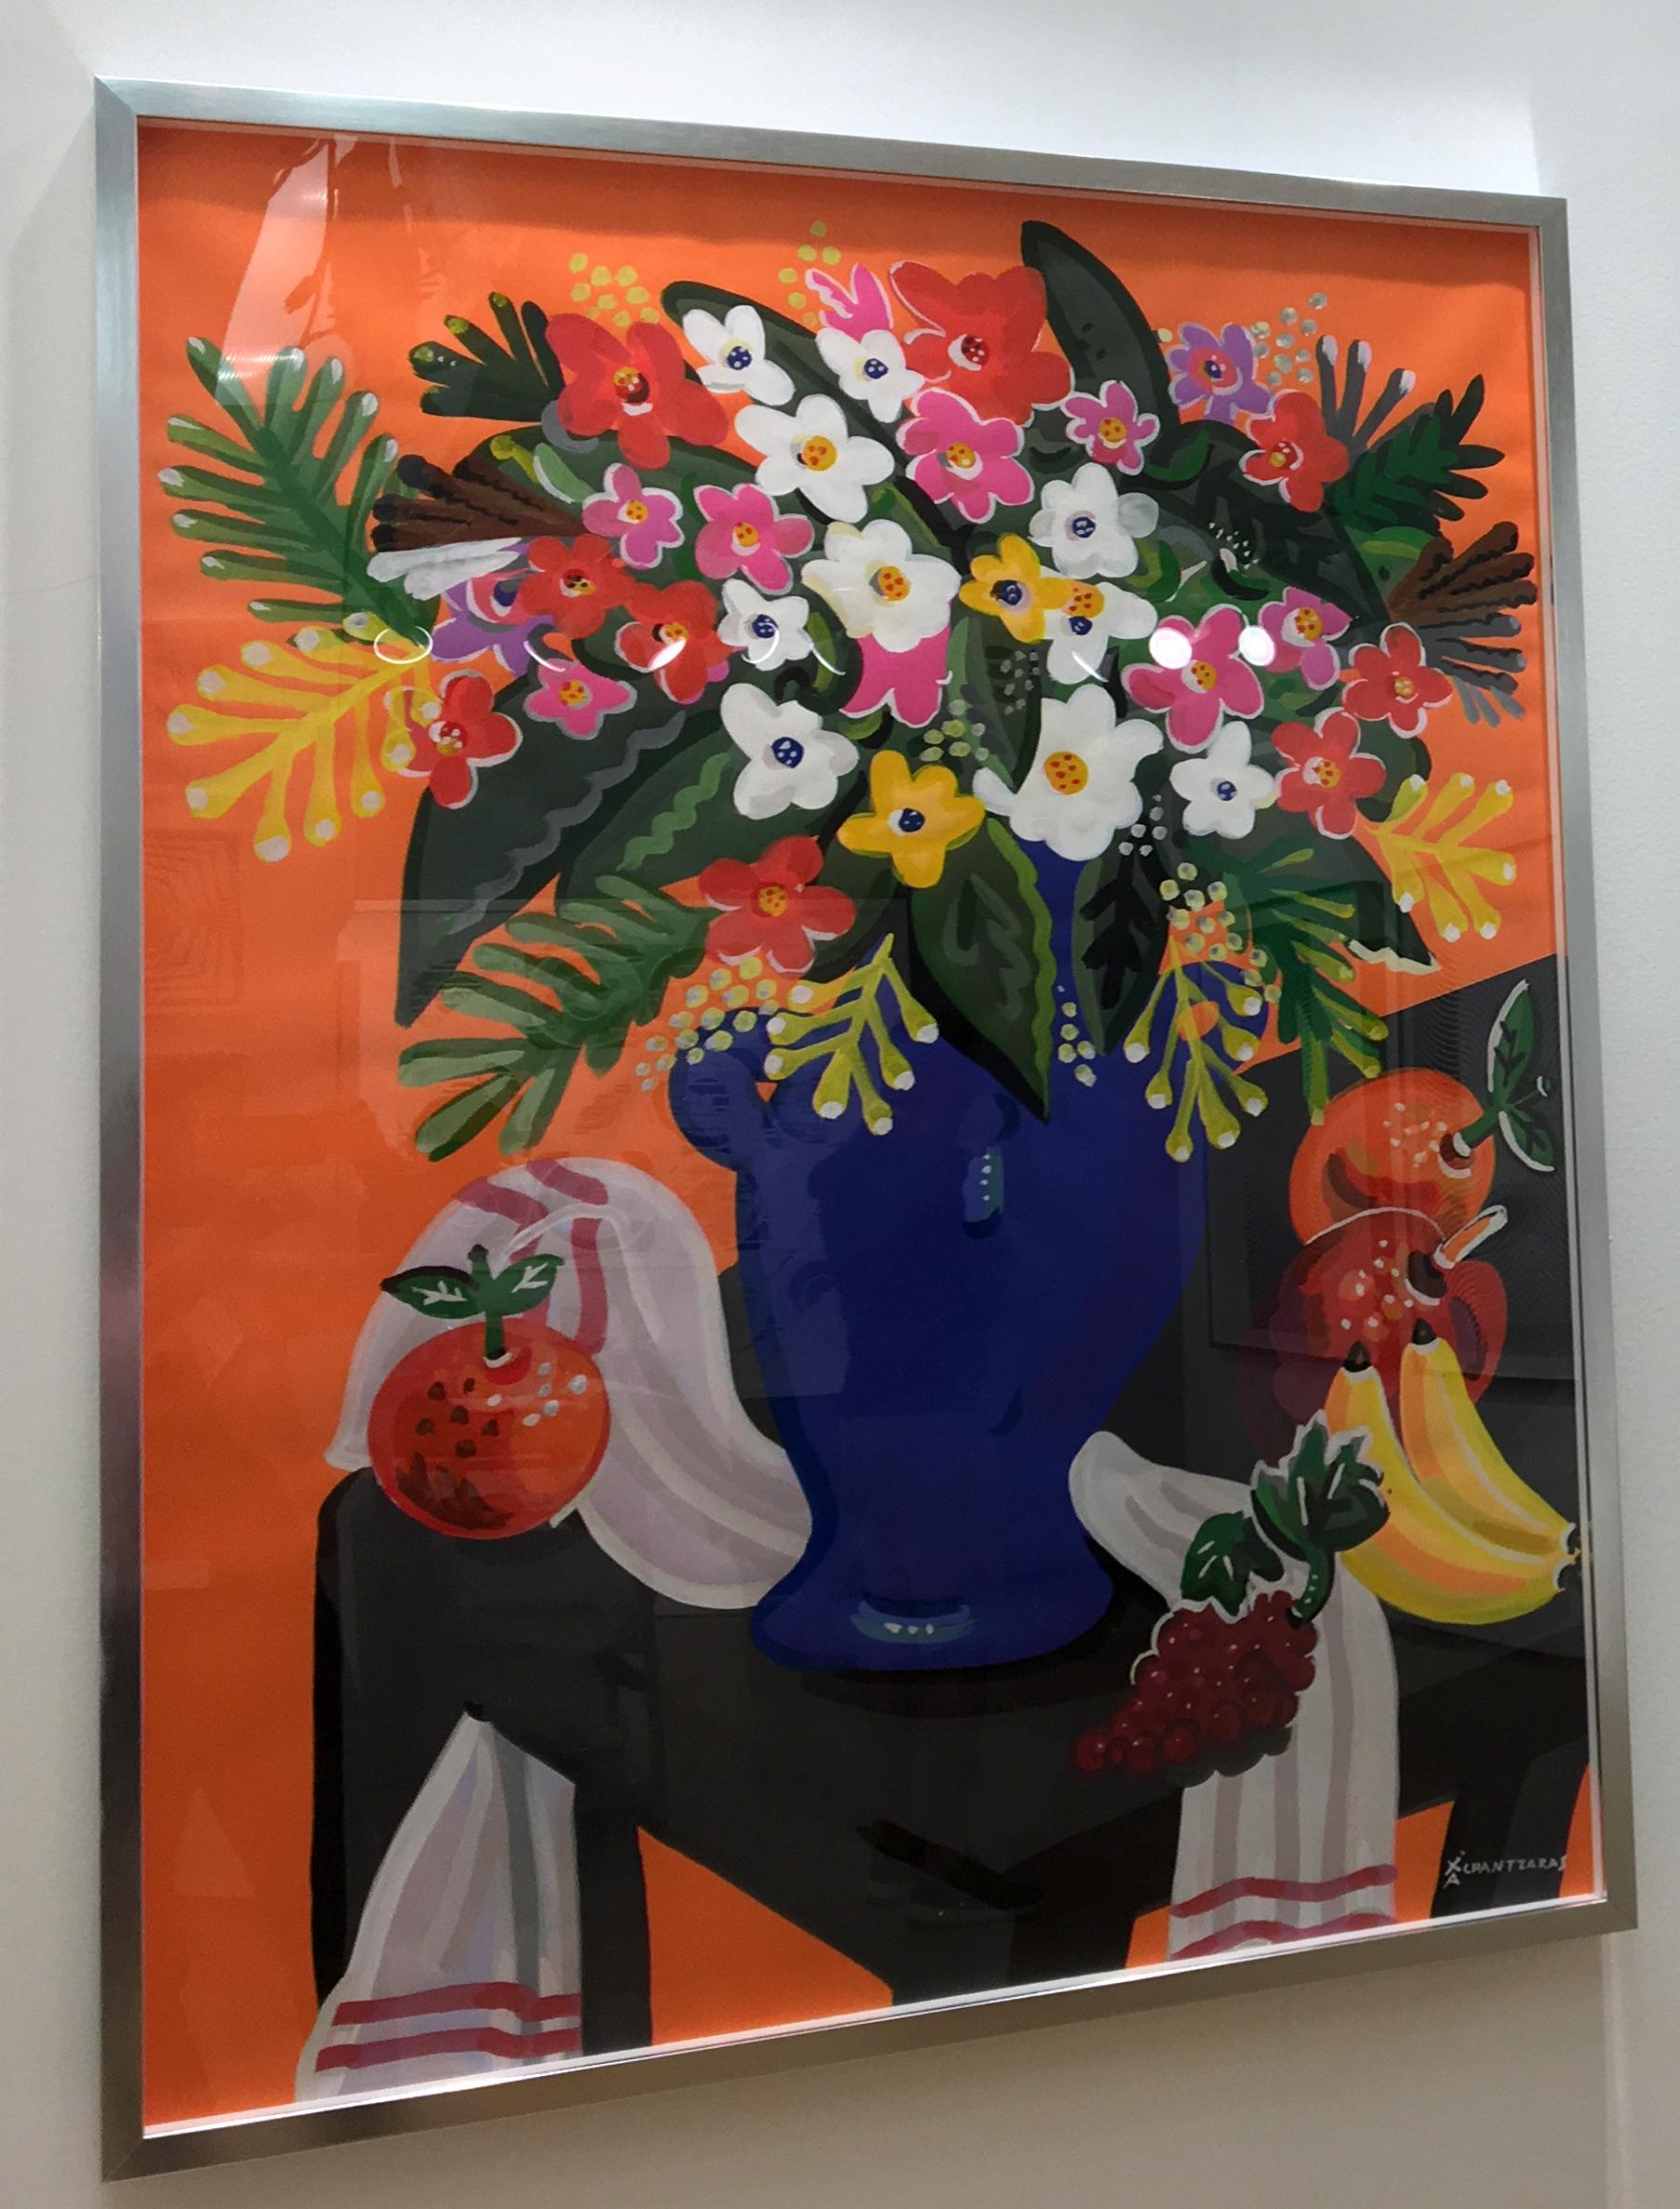 Cette peinture sur papier Fabriano, intitulée Bouquet avec fond orange, est l'une des dernières séries de Chantzaras de style pop art et d'influences colorées classiques de cette peinture de fleurs de nature morte. Les couleurs sont audacieuses et